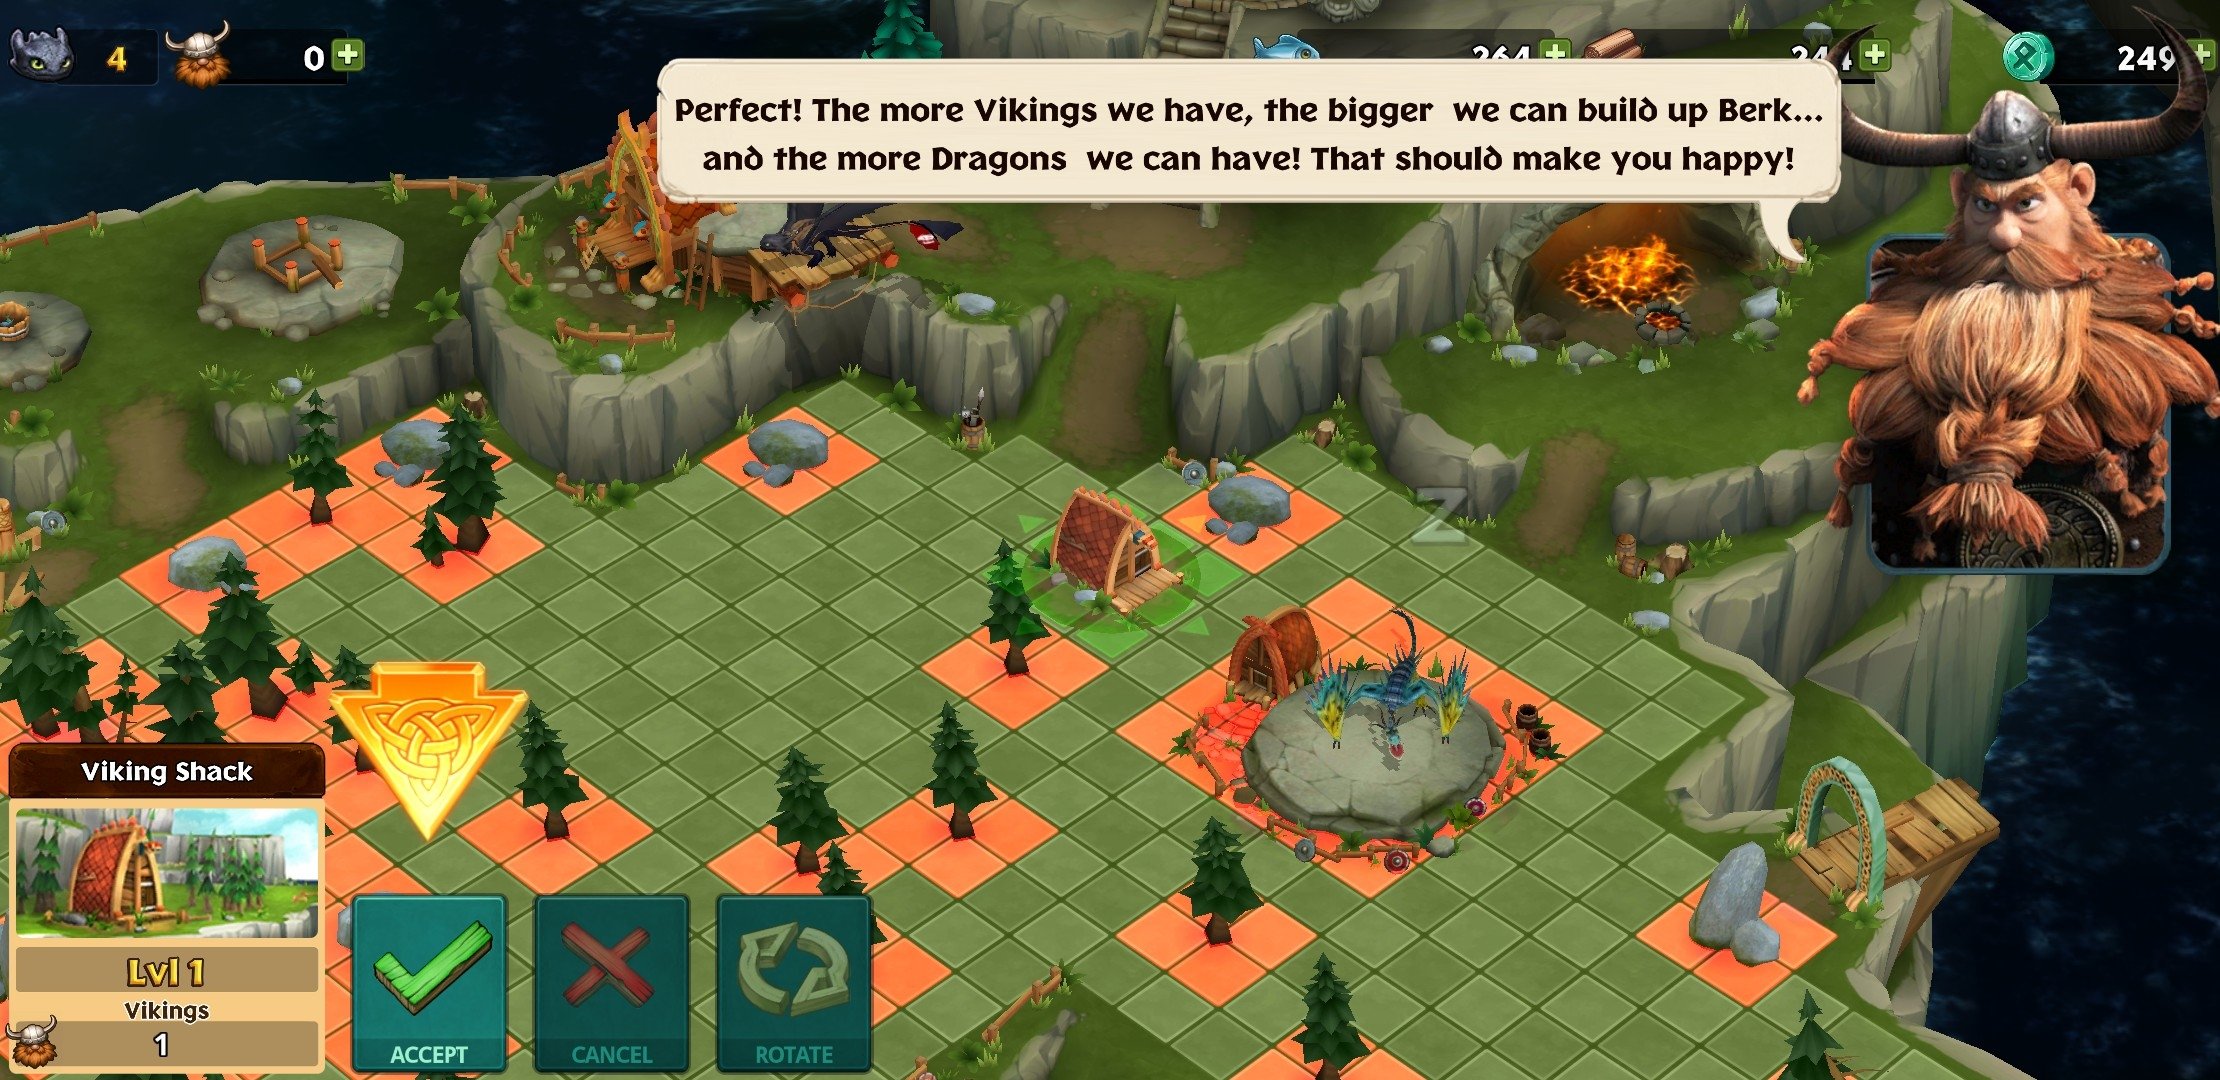 Dragones: El resurgir de Mema - Apps en Google Play